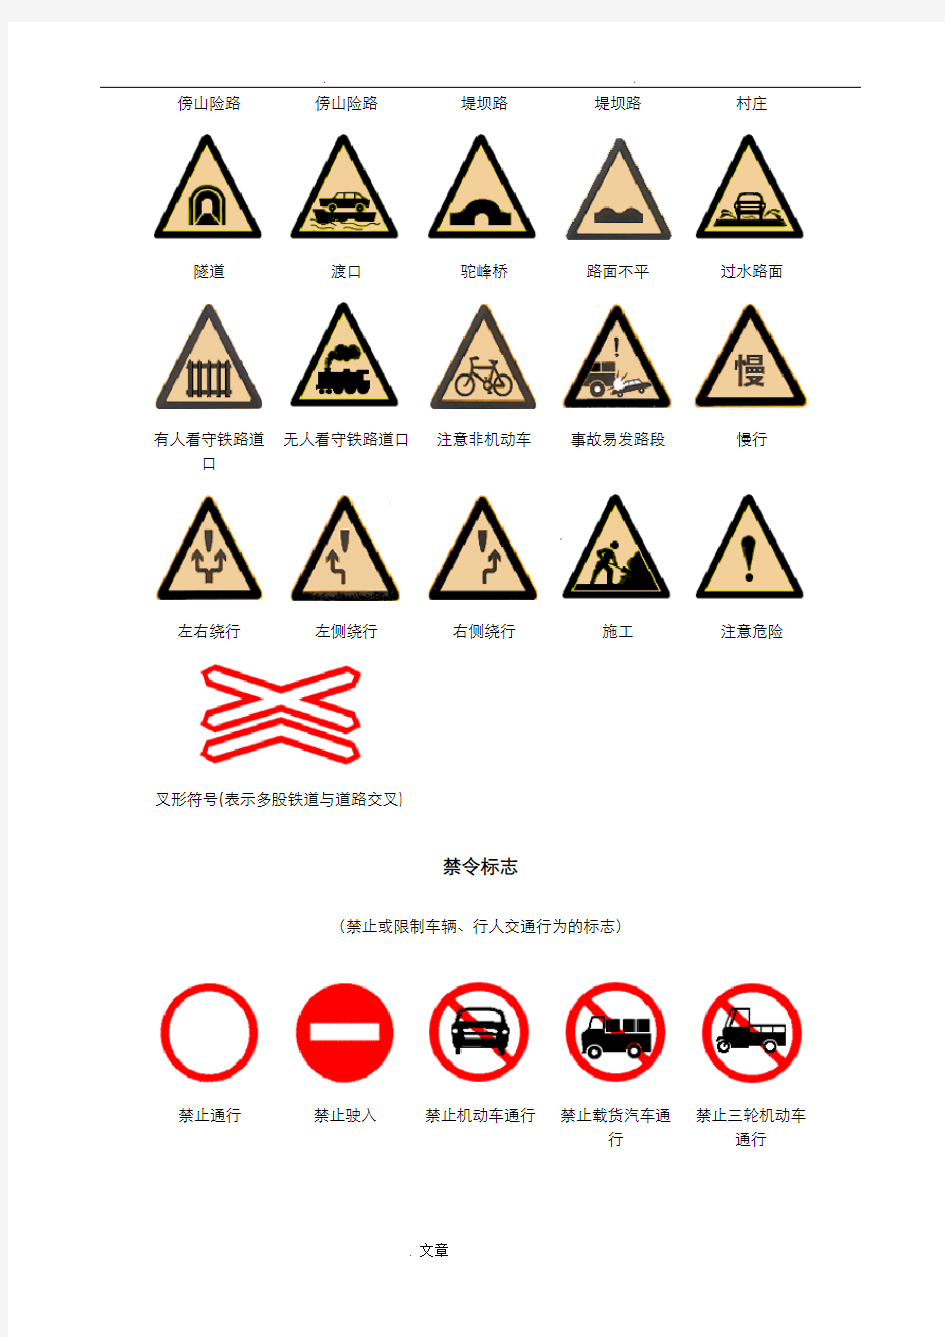 中国交通标志大全——超详细_易懂